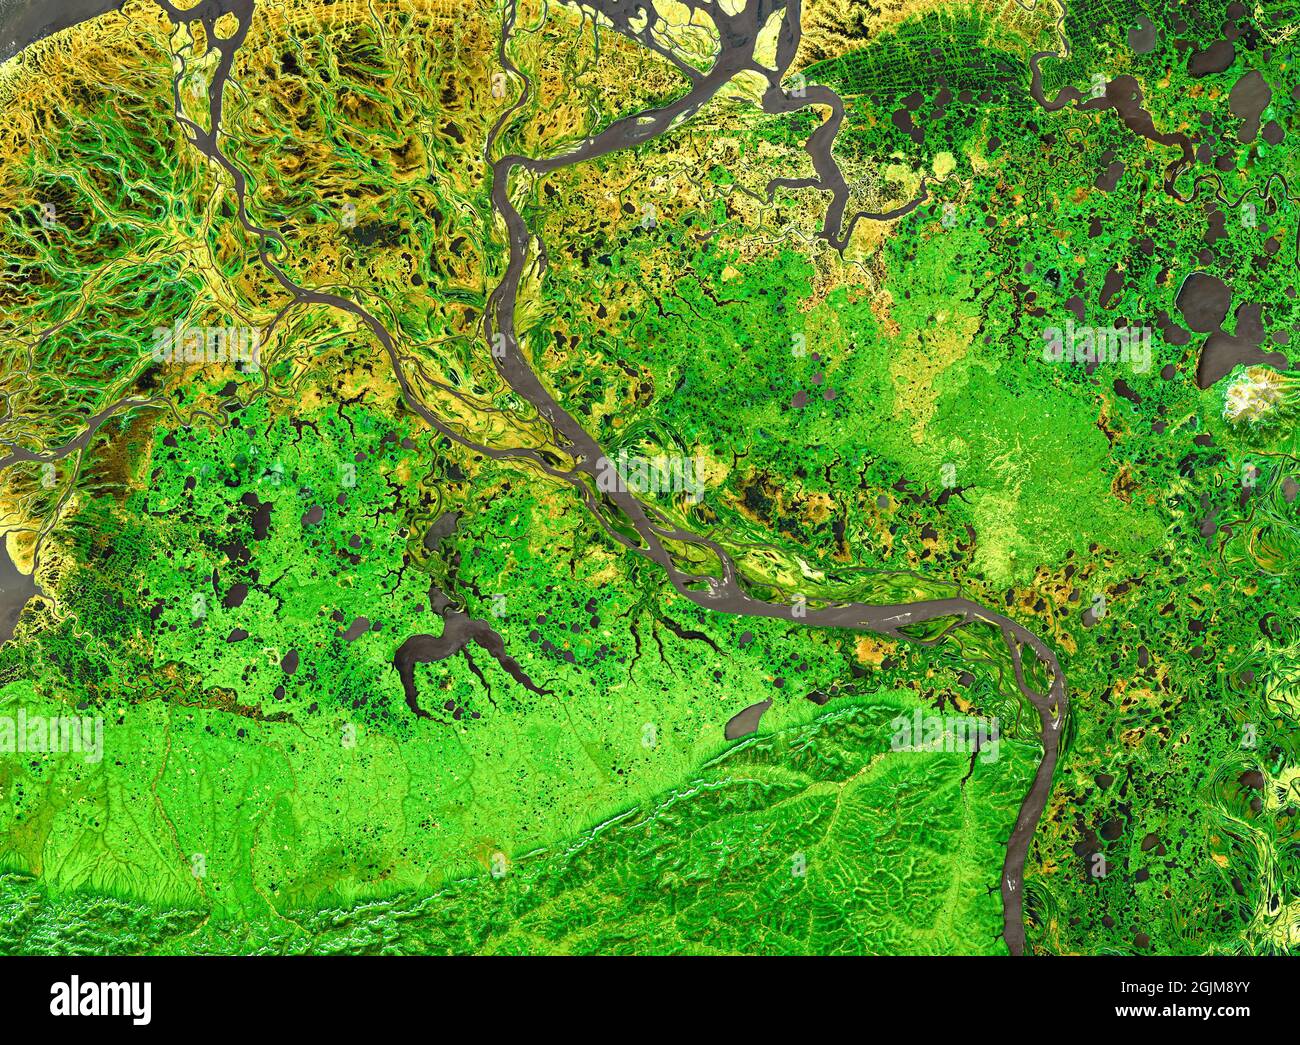 Motif nature sur la photo satellite, delta de la rivière tropicale. Vue aérienne du dessus de la surface verte de la Terre comme arrière-plan abstrait de texture. Paysage pris en compte Banque D'Images